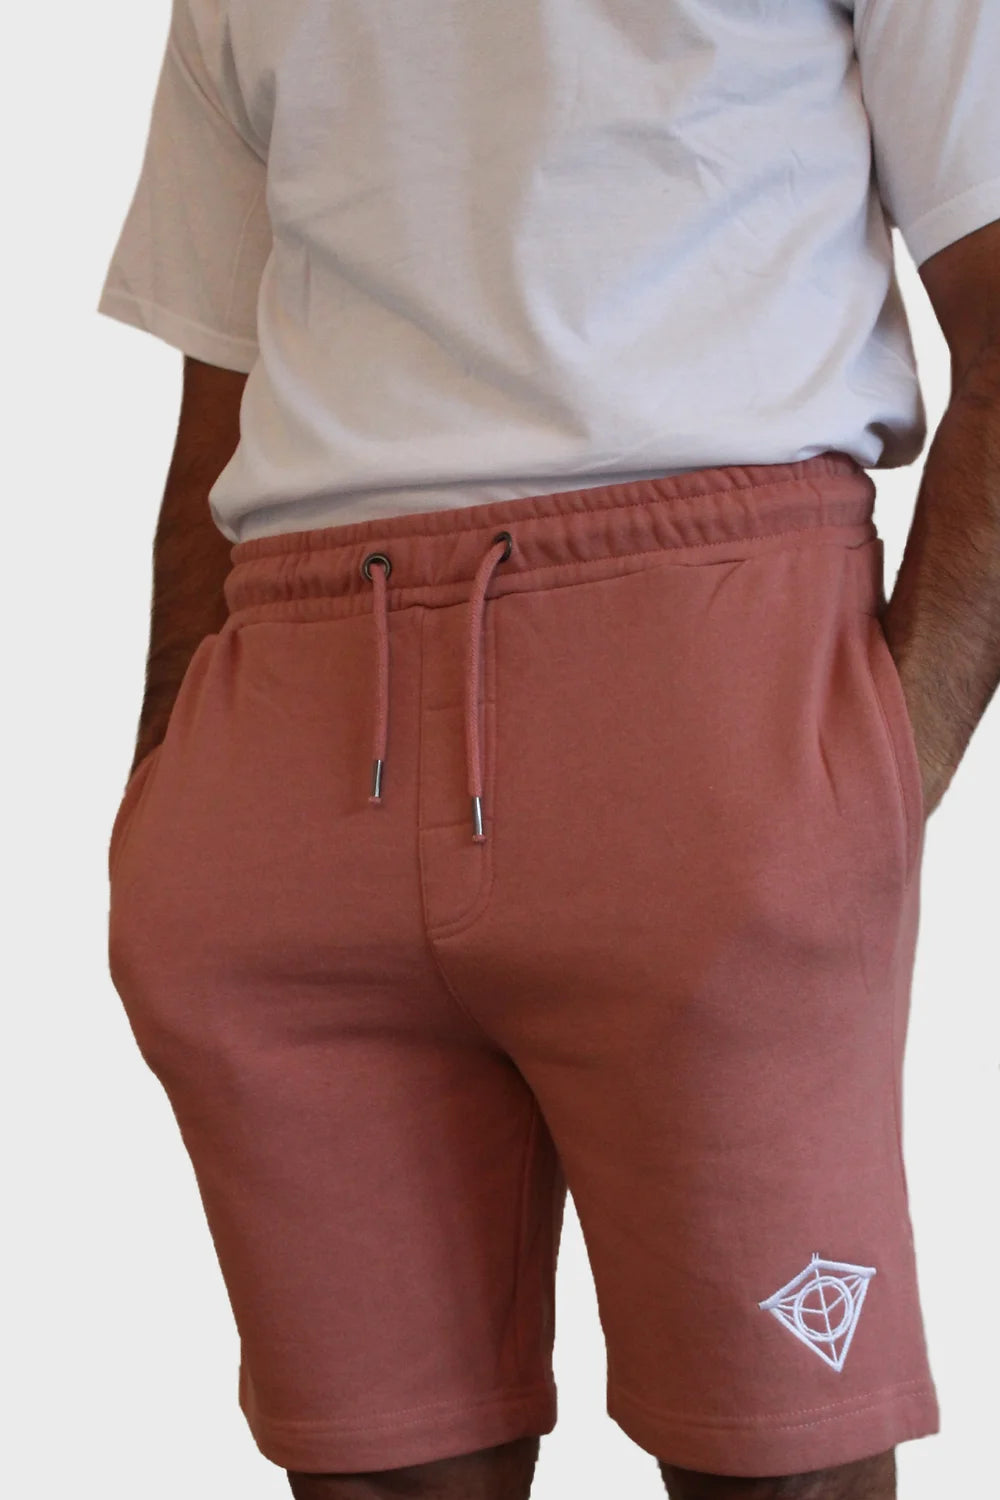 Pink & White Tatlim Shorts